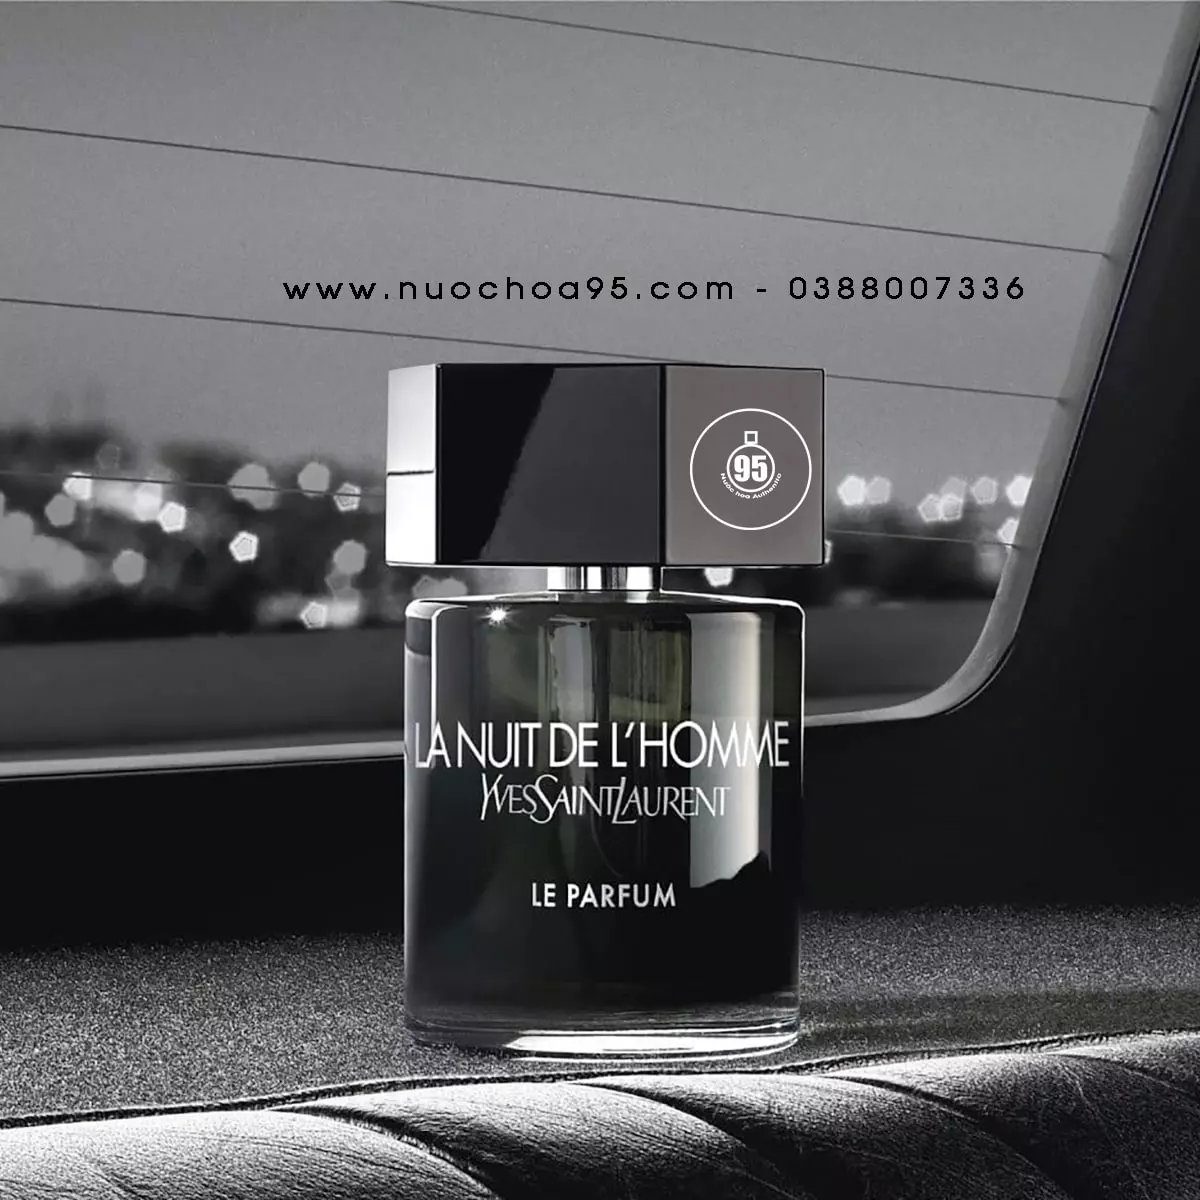 Nước hoa Yves Saint Laurent La Nuit De L'homme Le Parfum - Ảnh 1